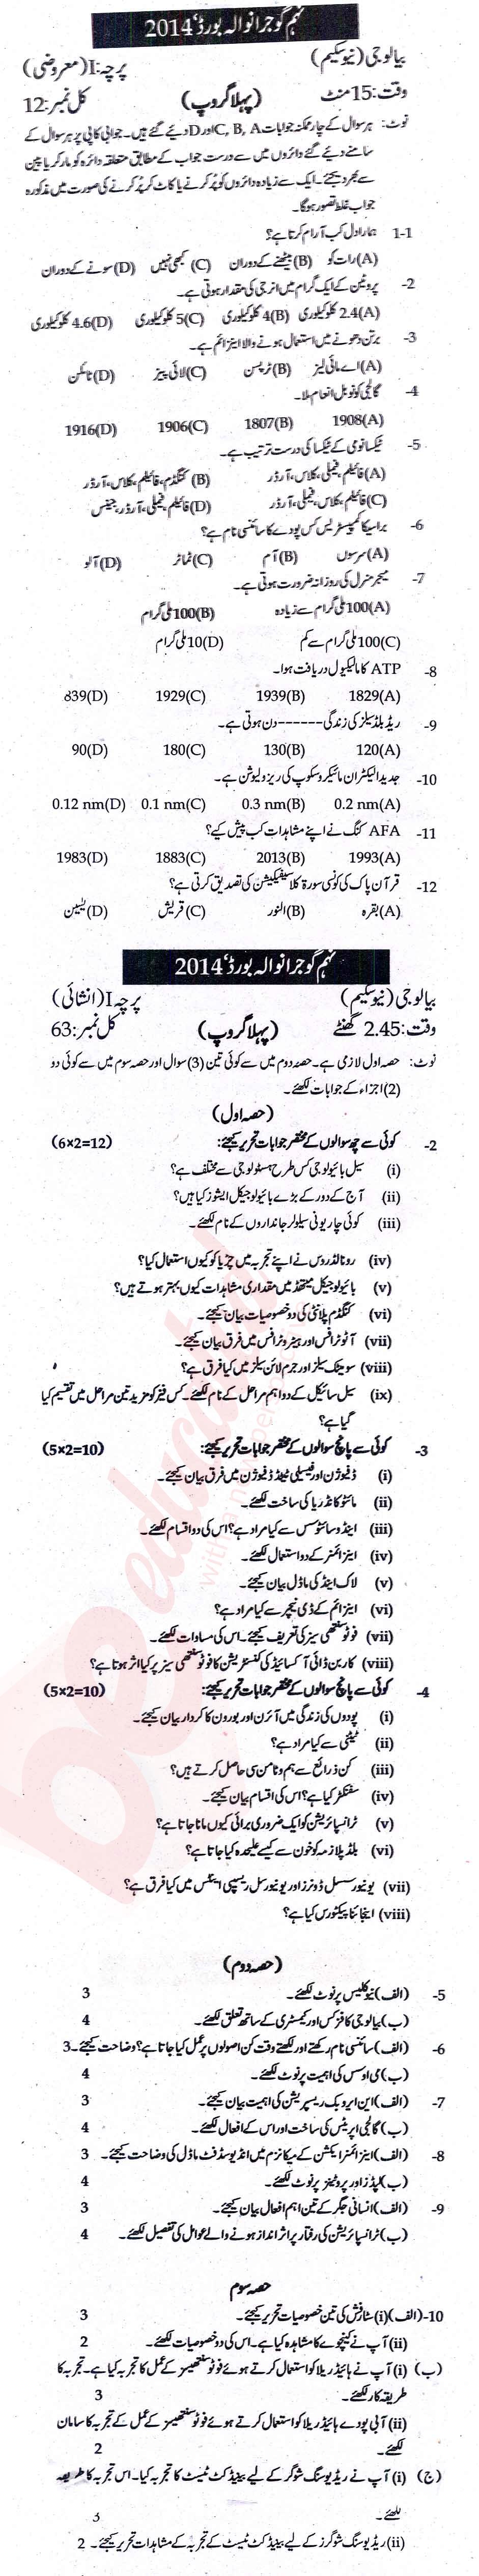 Biology 9th Urdu Medium Past Paper Group 1 BISE Gujranwala 2014